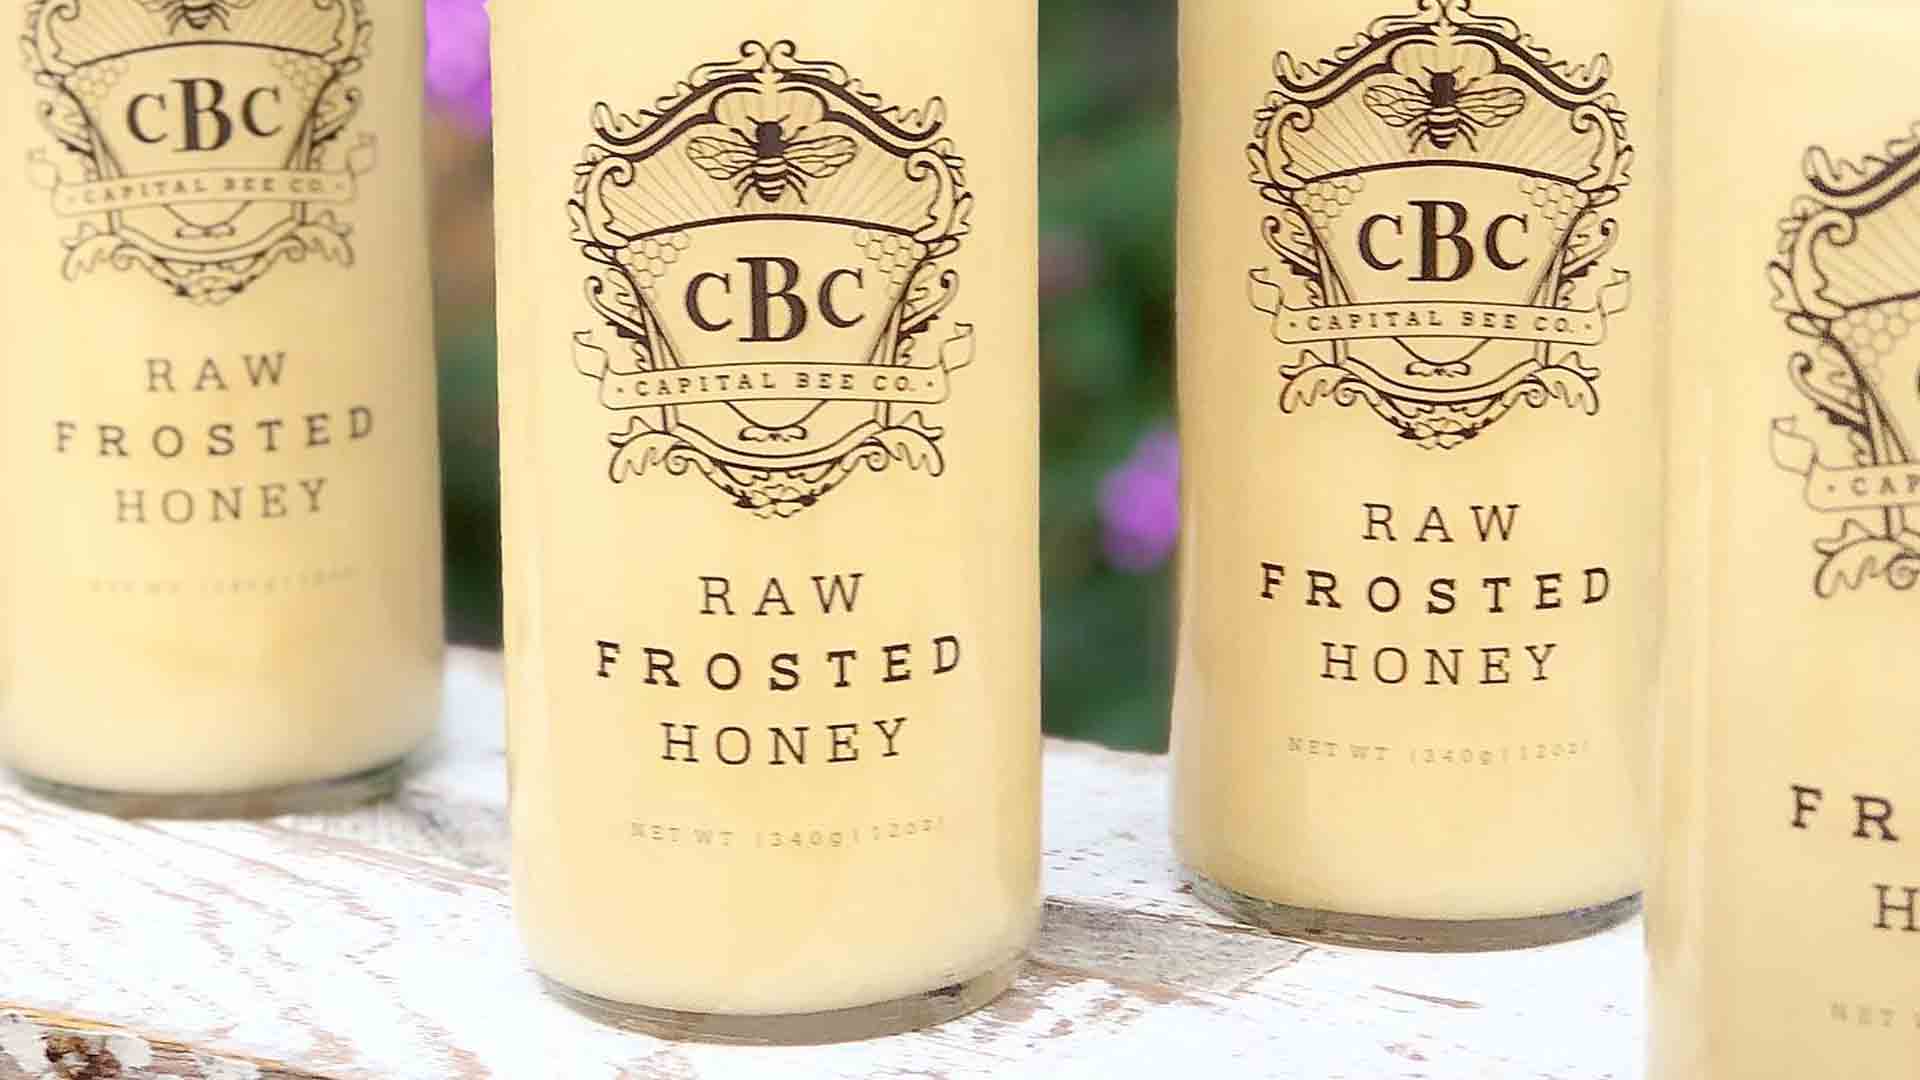 Raw Frosted Honey - Capitol Bee Company Savannah